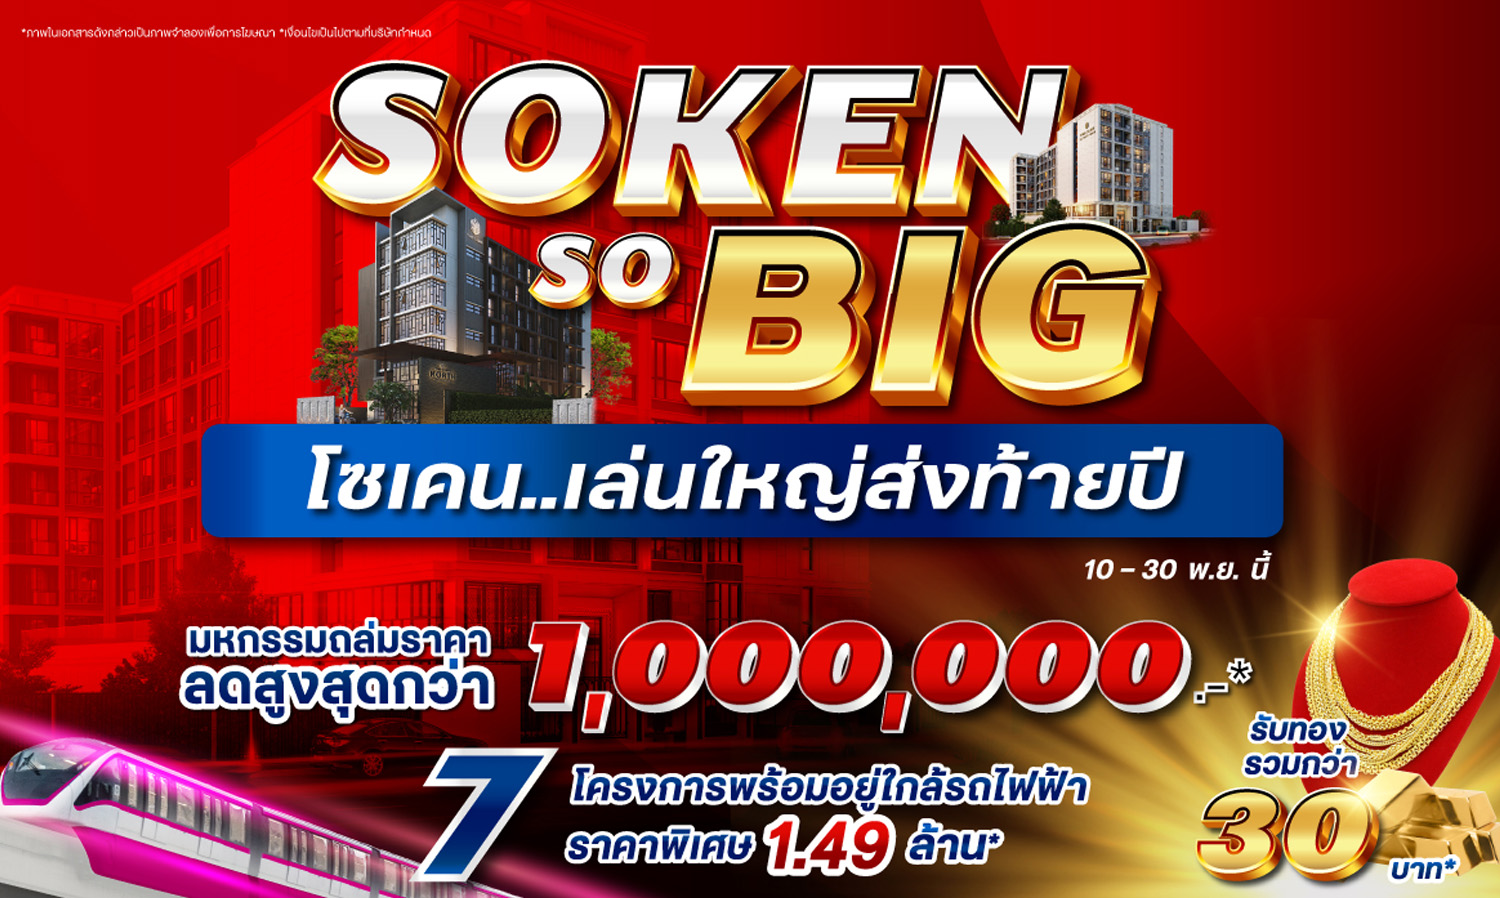 โซเคน...เล่นใหญ่ส่งท้ายปี Soken So BIG ลดสูงสุด 1 ล้าน รับทองคำ กับ 7 โครงการพร้อมอยู่ใกล้รถไฟฟ้า